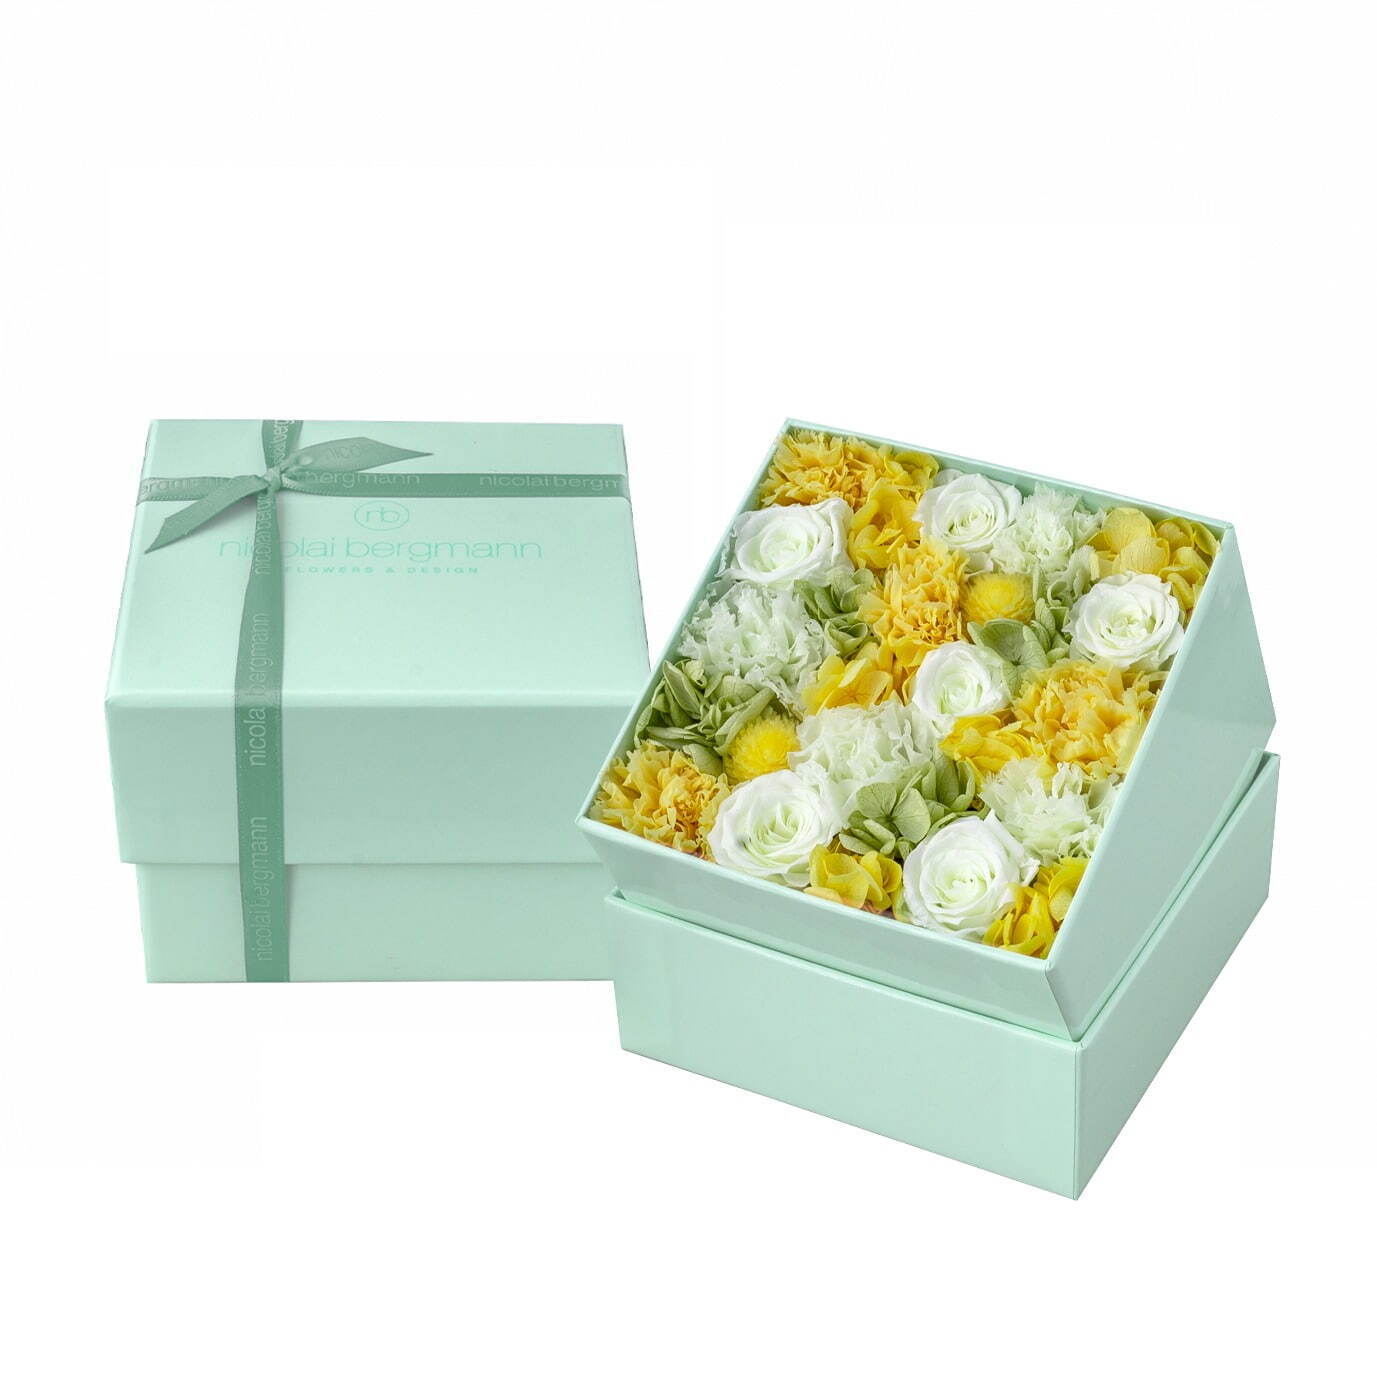 ニコライ バーグマンの夏限定フラワーボックス、コーラルグリーンのボックスにパステルカラーの花々｜写真5